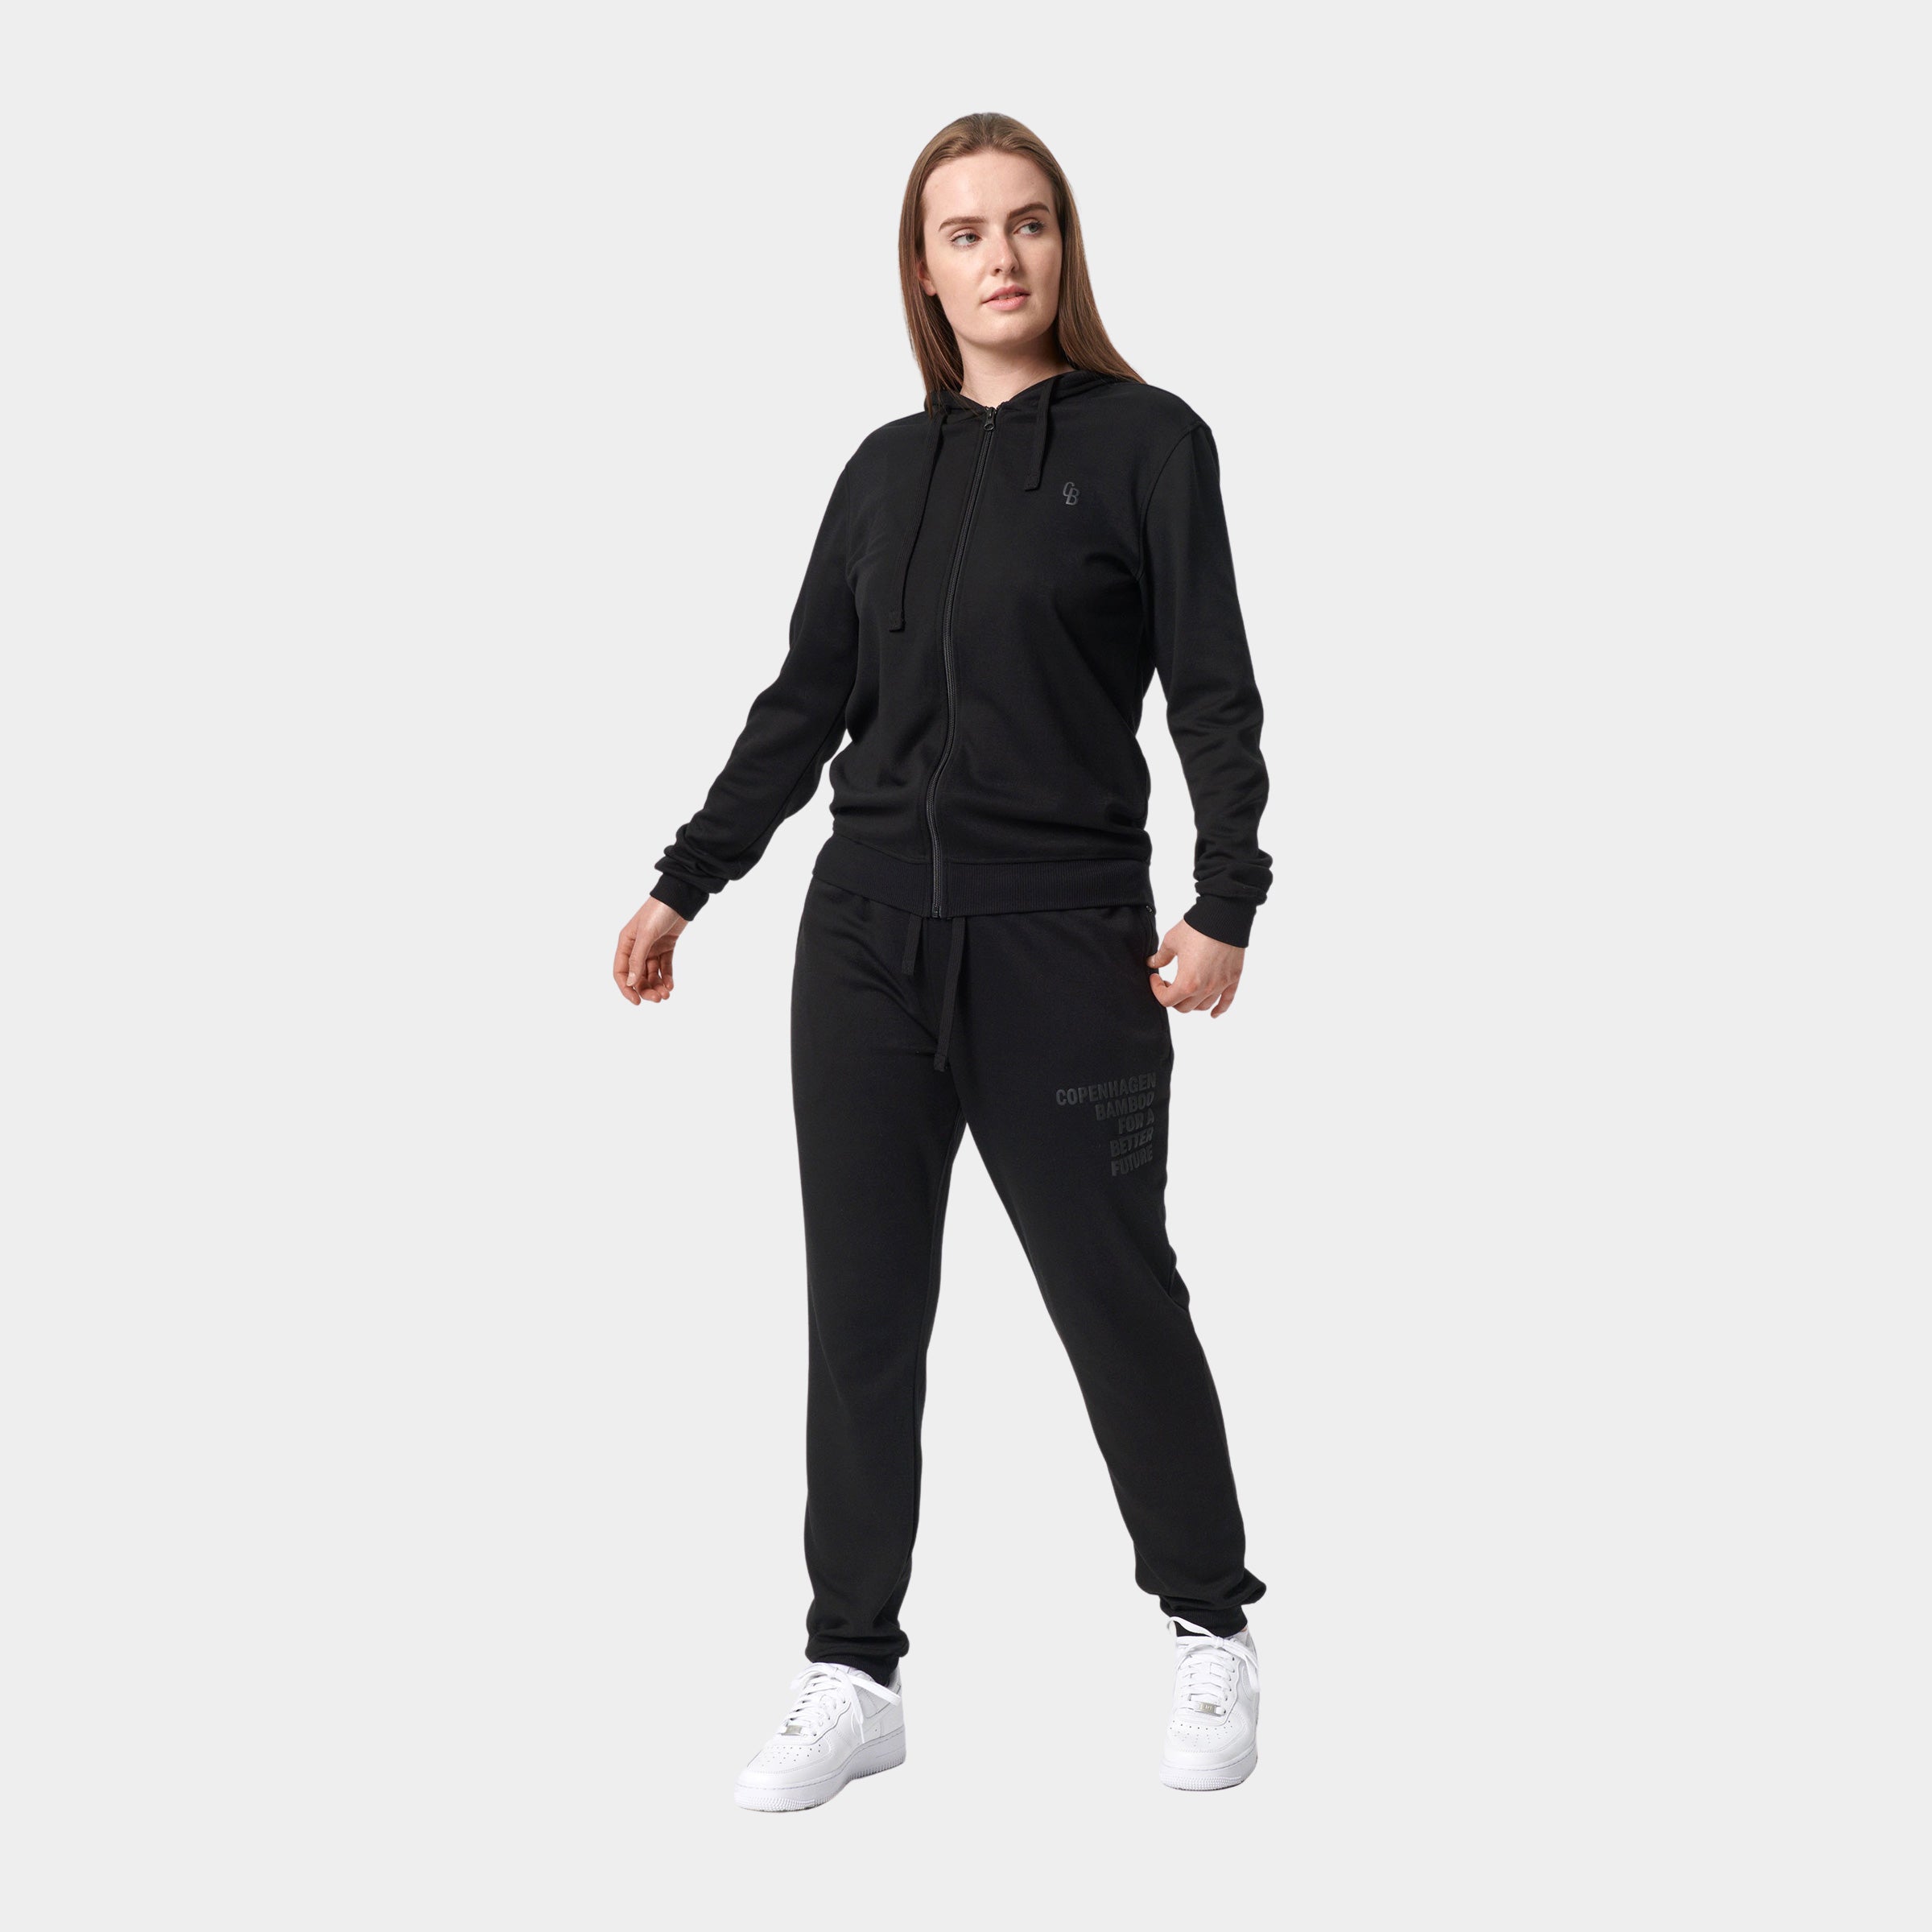 Billede af Bambus hoodie med lynlås joggingsæt i sort til damer fra Copenhagen Bamboo, XS